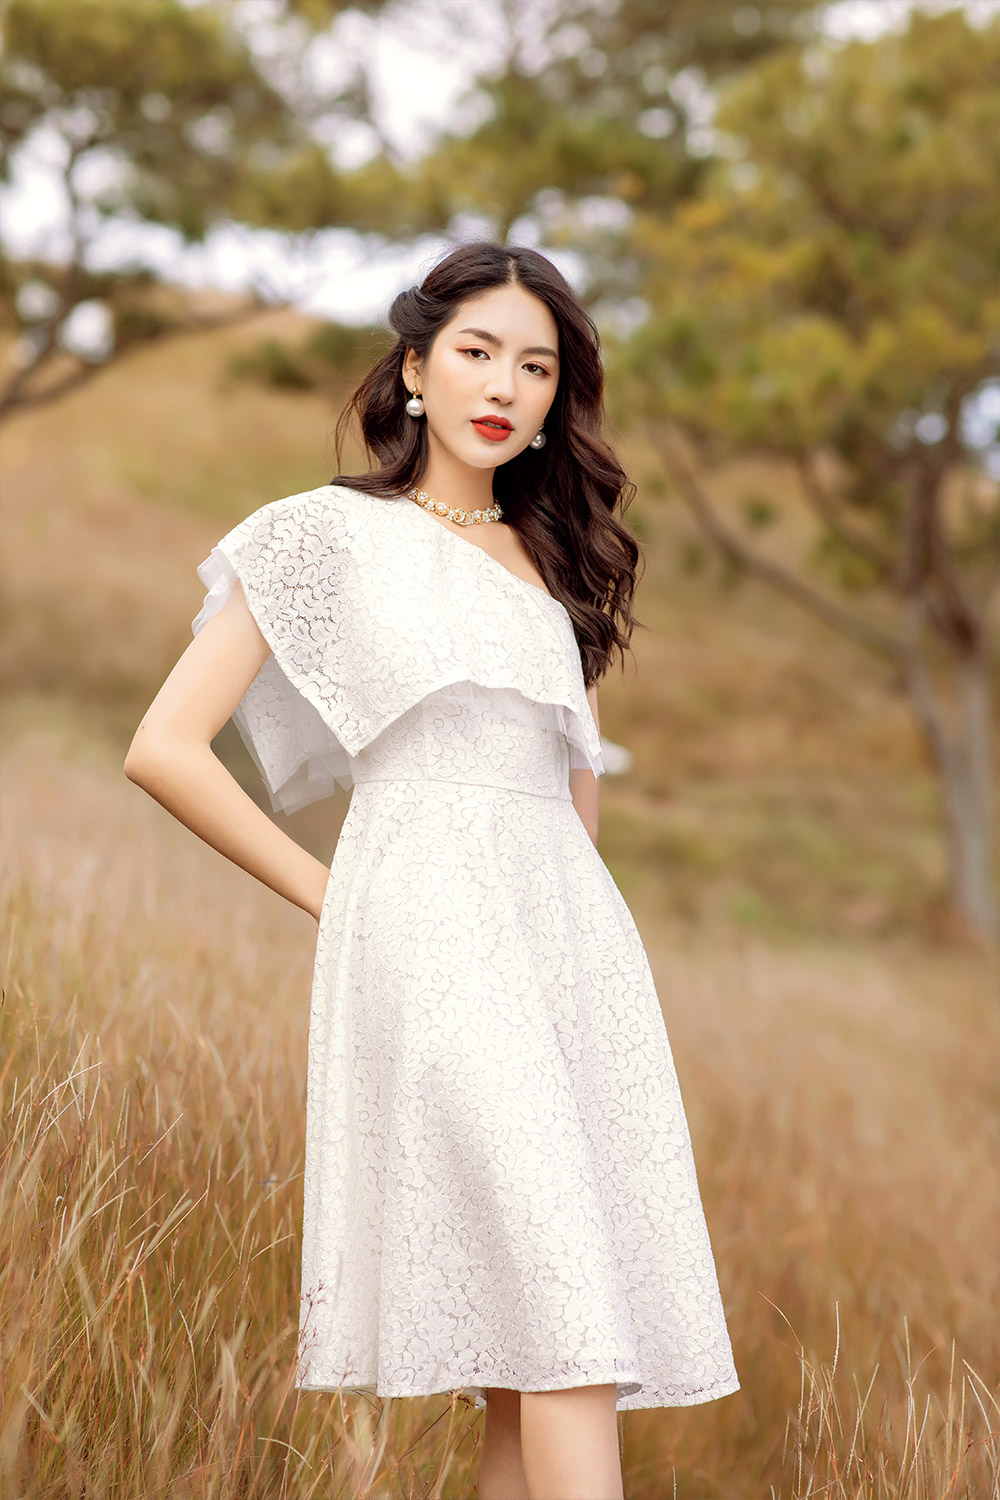 Mua Váy đầm xòe dự tiệc công chúa màu trắng thanh lịch duyên dáng có  bigsize mẫu mới giá rẻ đẹp - Trắng - L tại THỜI TRANG TINA | Tiki